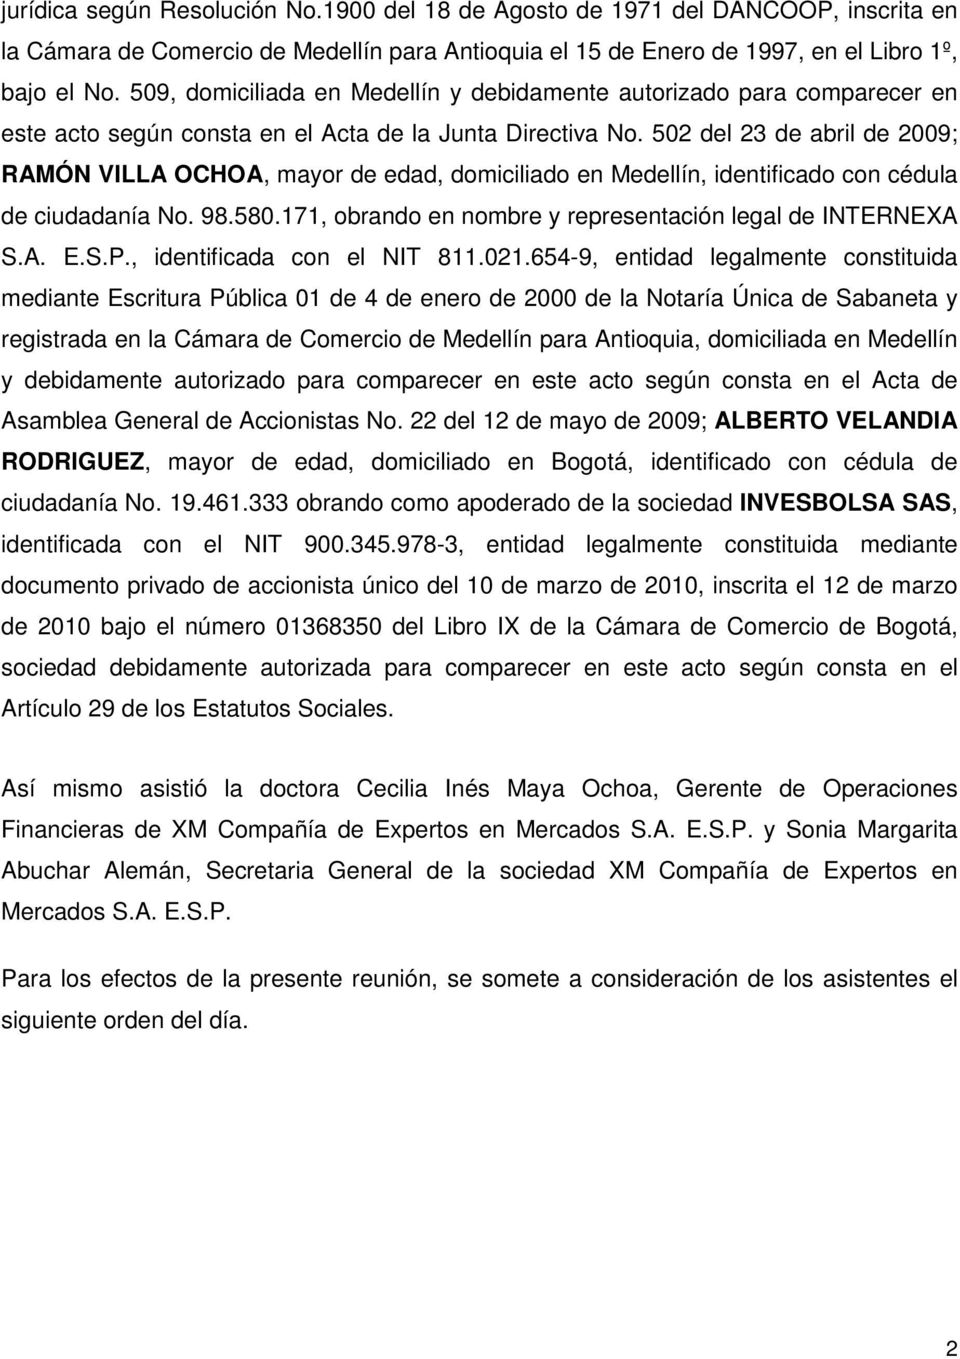 502 del 23 de abril de 2009; RAMÓN VILLA OCHOA, mayor de edad, domiciliado en Medellín, identificado con cédula de ciudadanía No. 98.580.171, obrando en nombre y representación legal de INTERNEXA S.A. E.